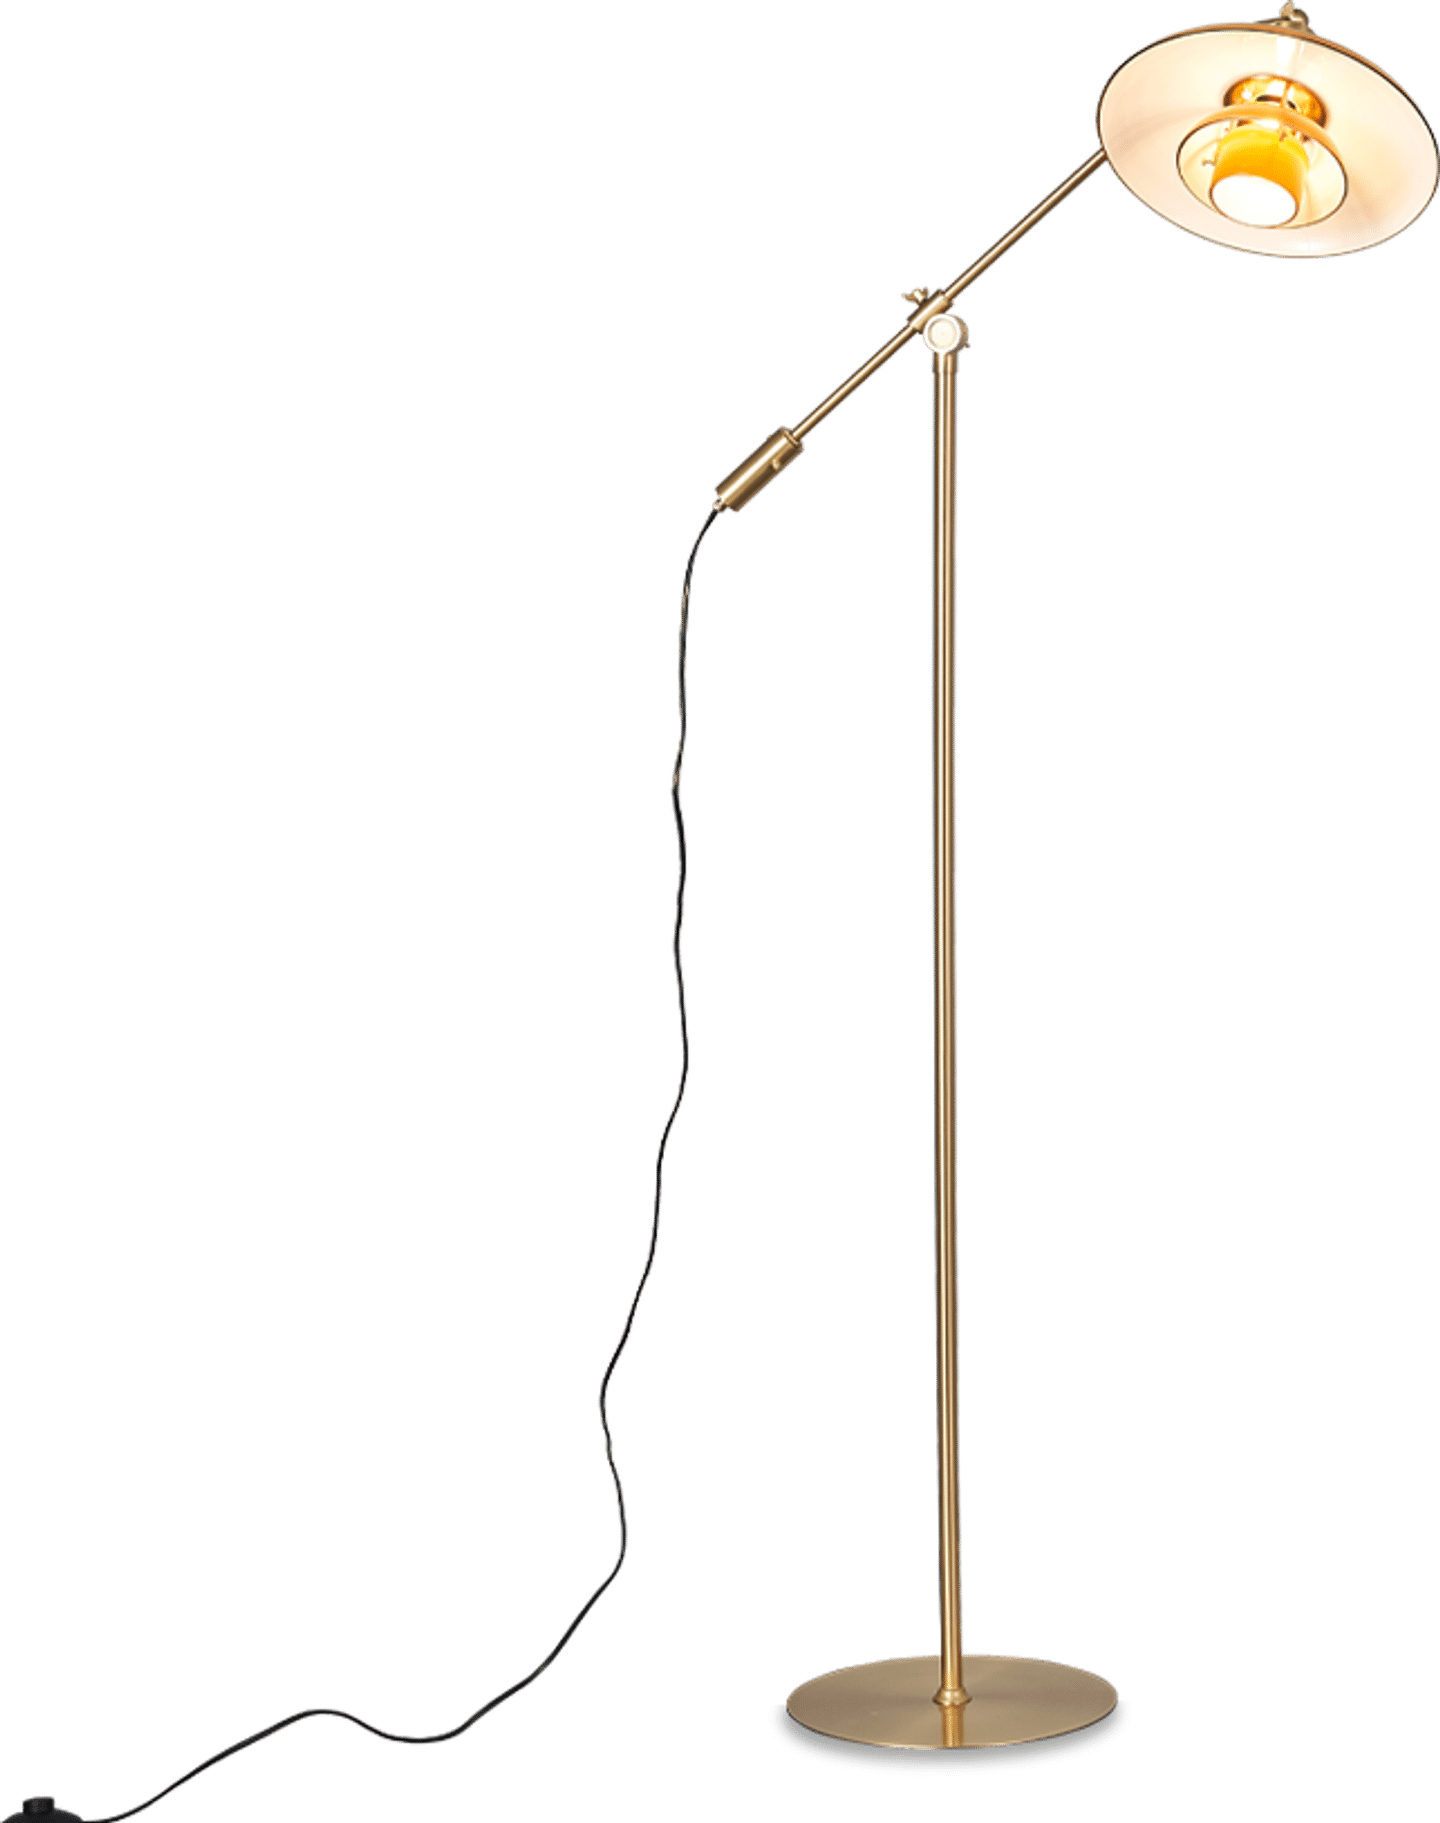 Stehlampe im Freischwinger-Stil Amber image.